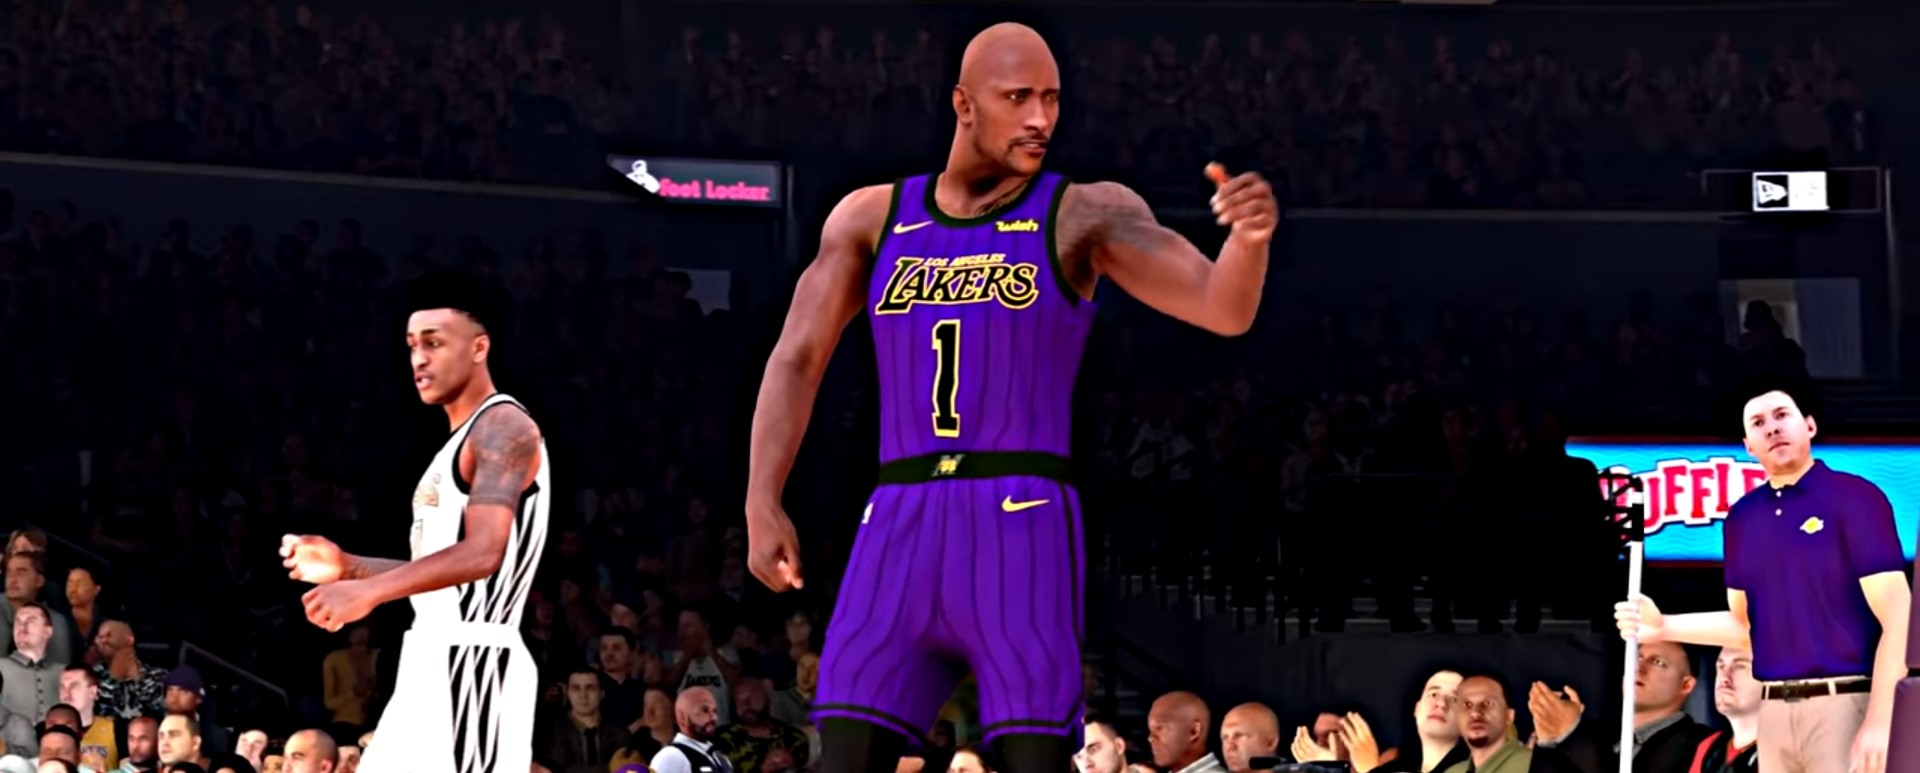 Dwayne johnson a réagit de manière humoristique d'une vidéo de NBA2K19 dans la quelle il porte le maillot des Lakers